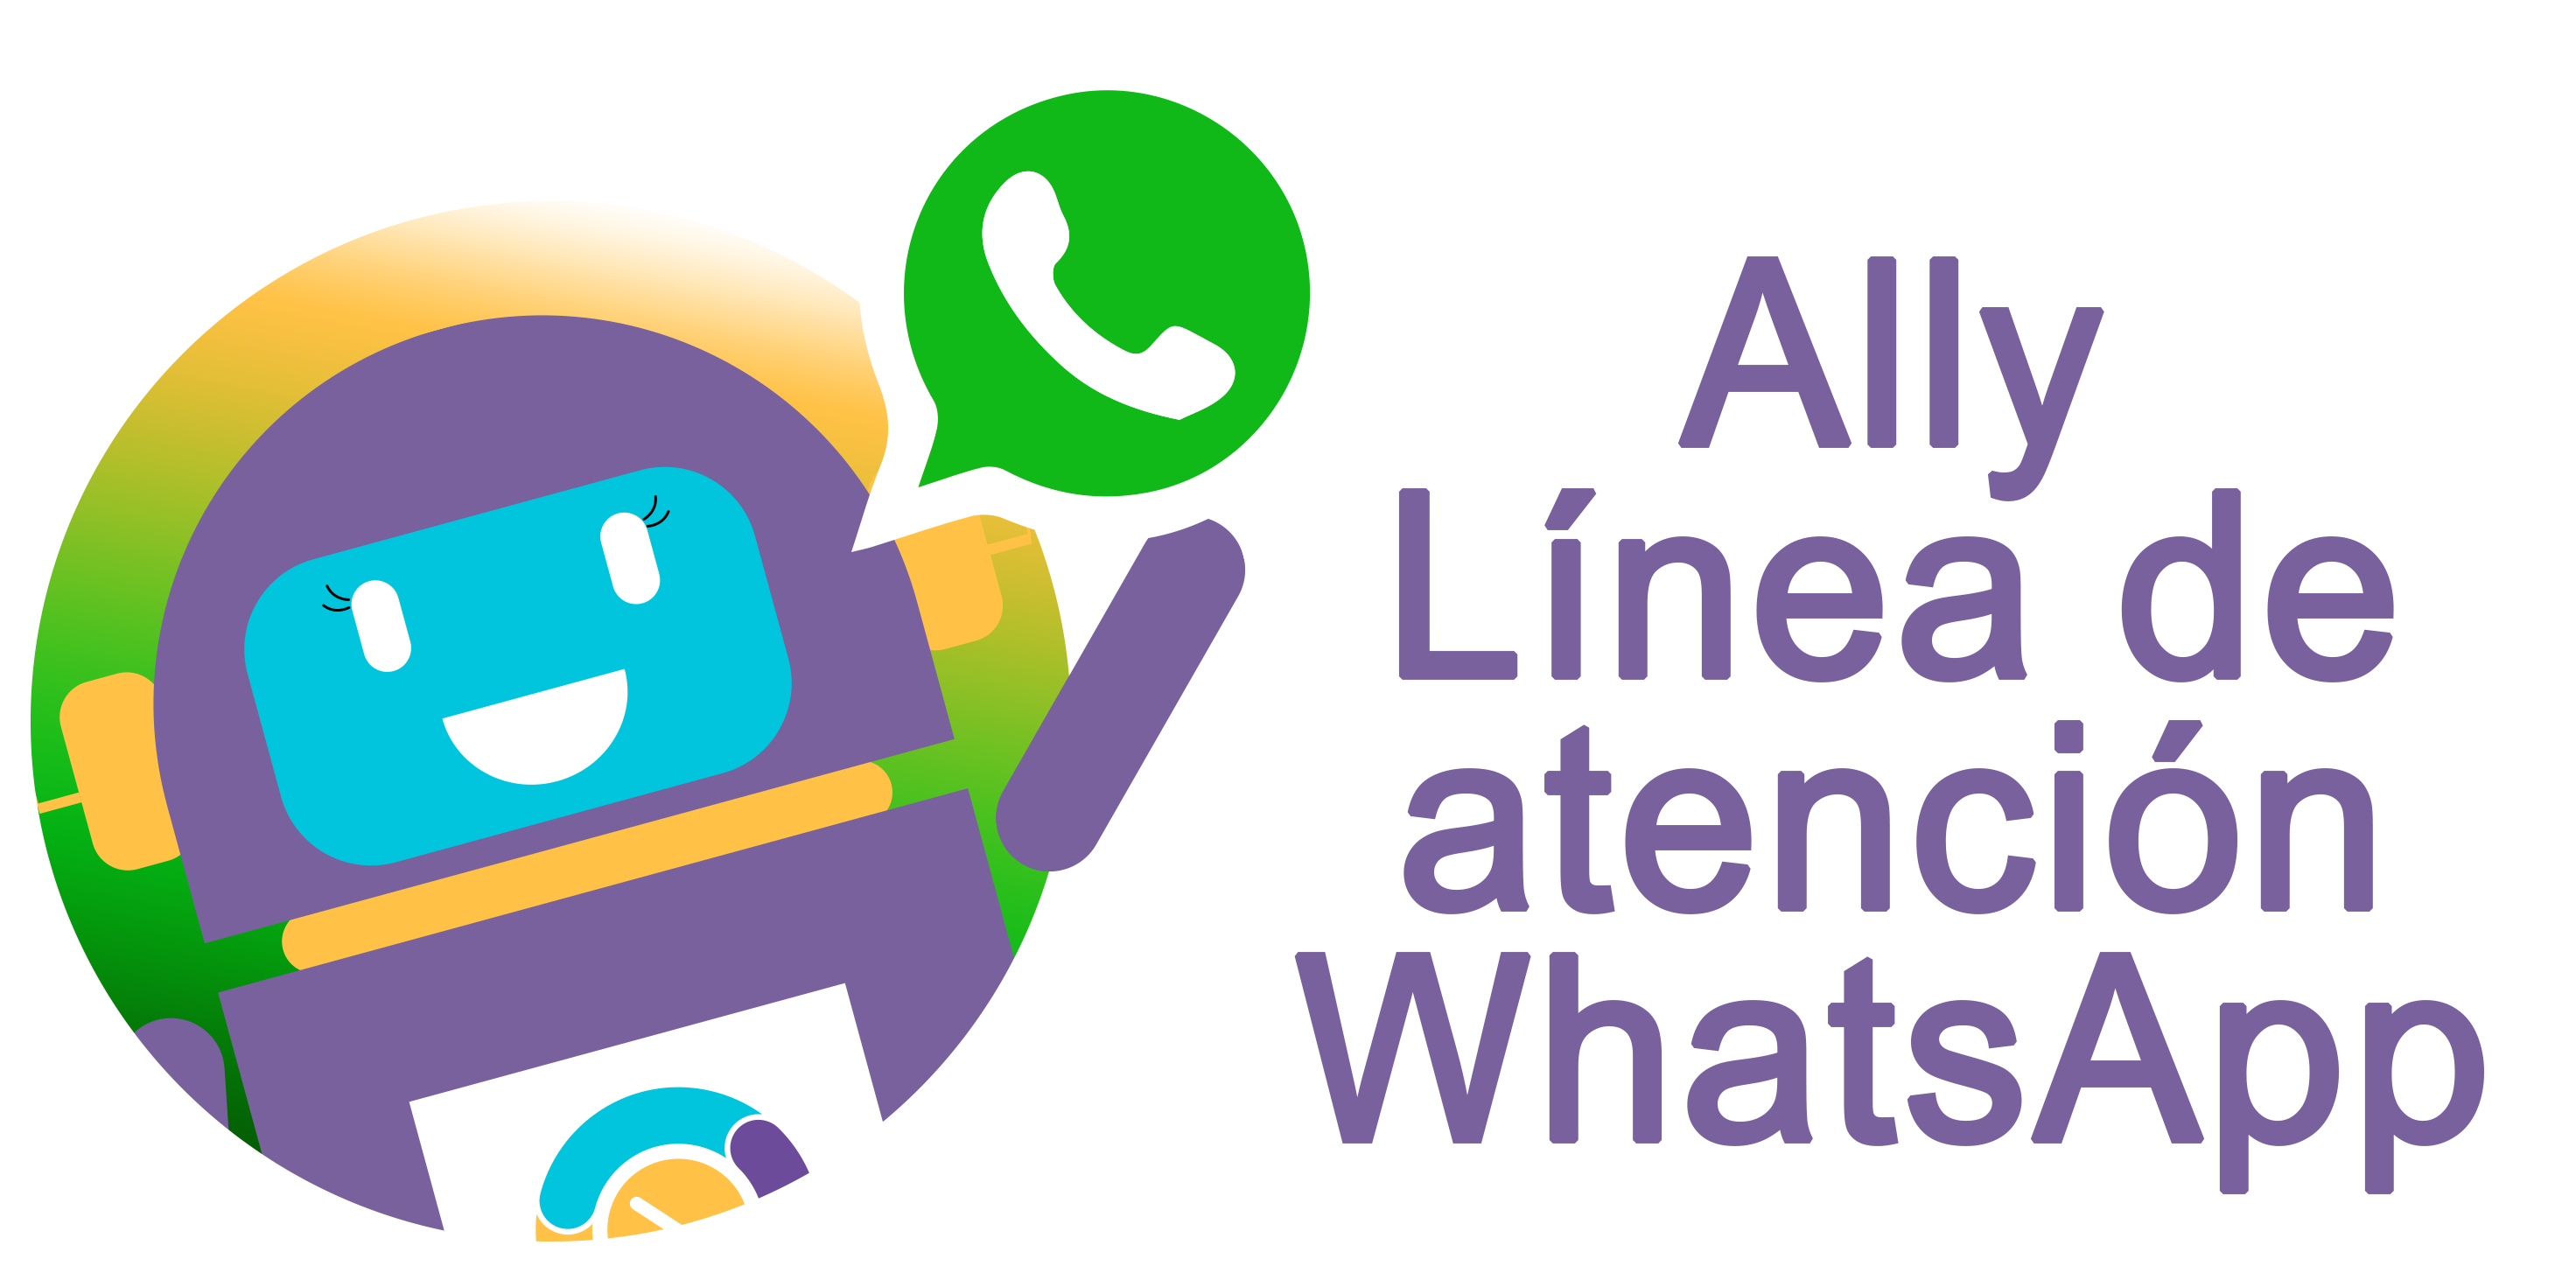 Ally Línea de atención Whatsapp